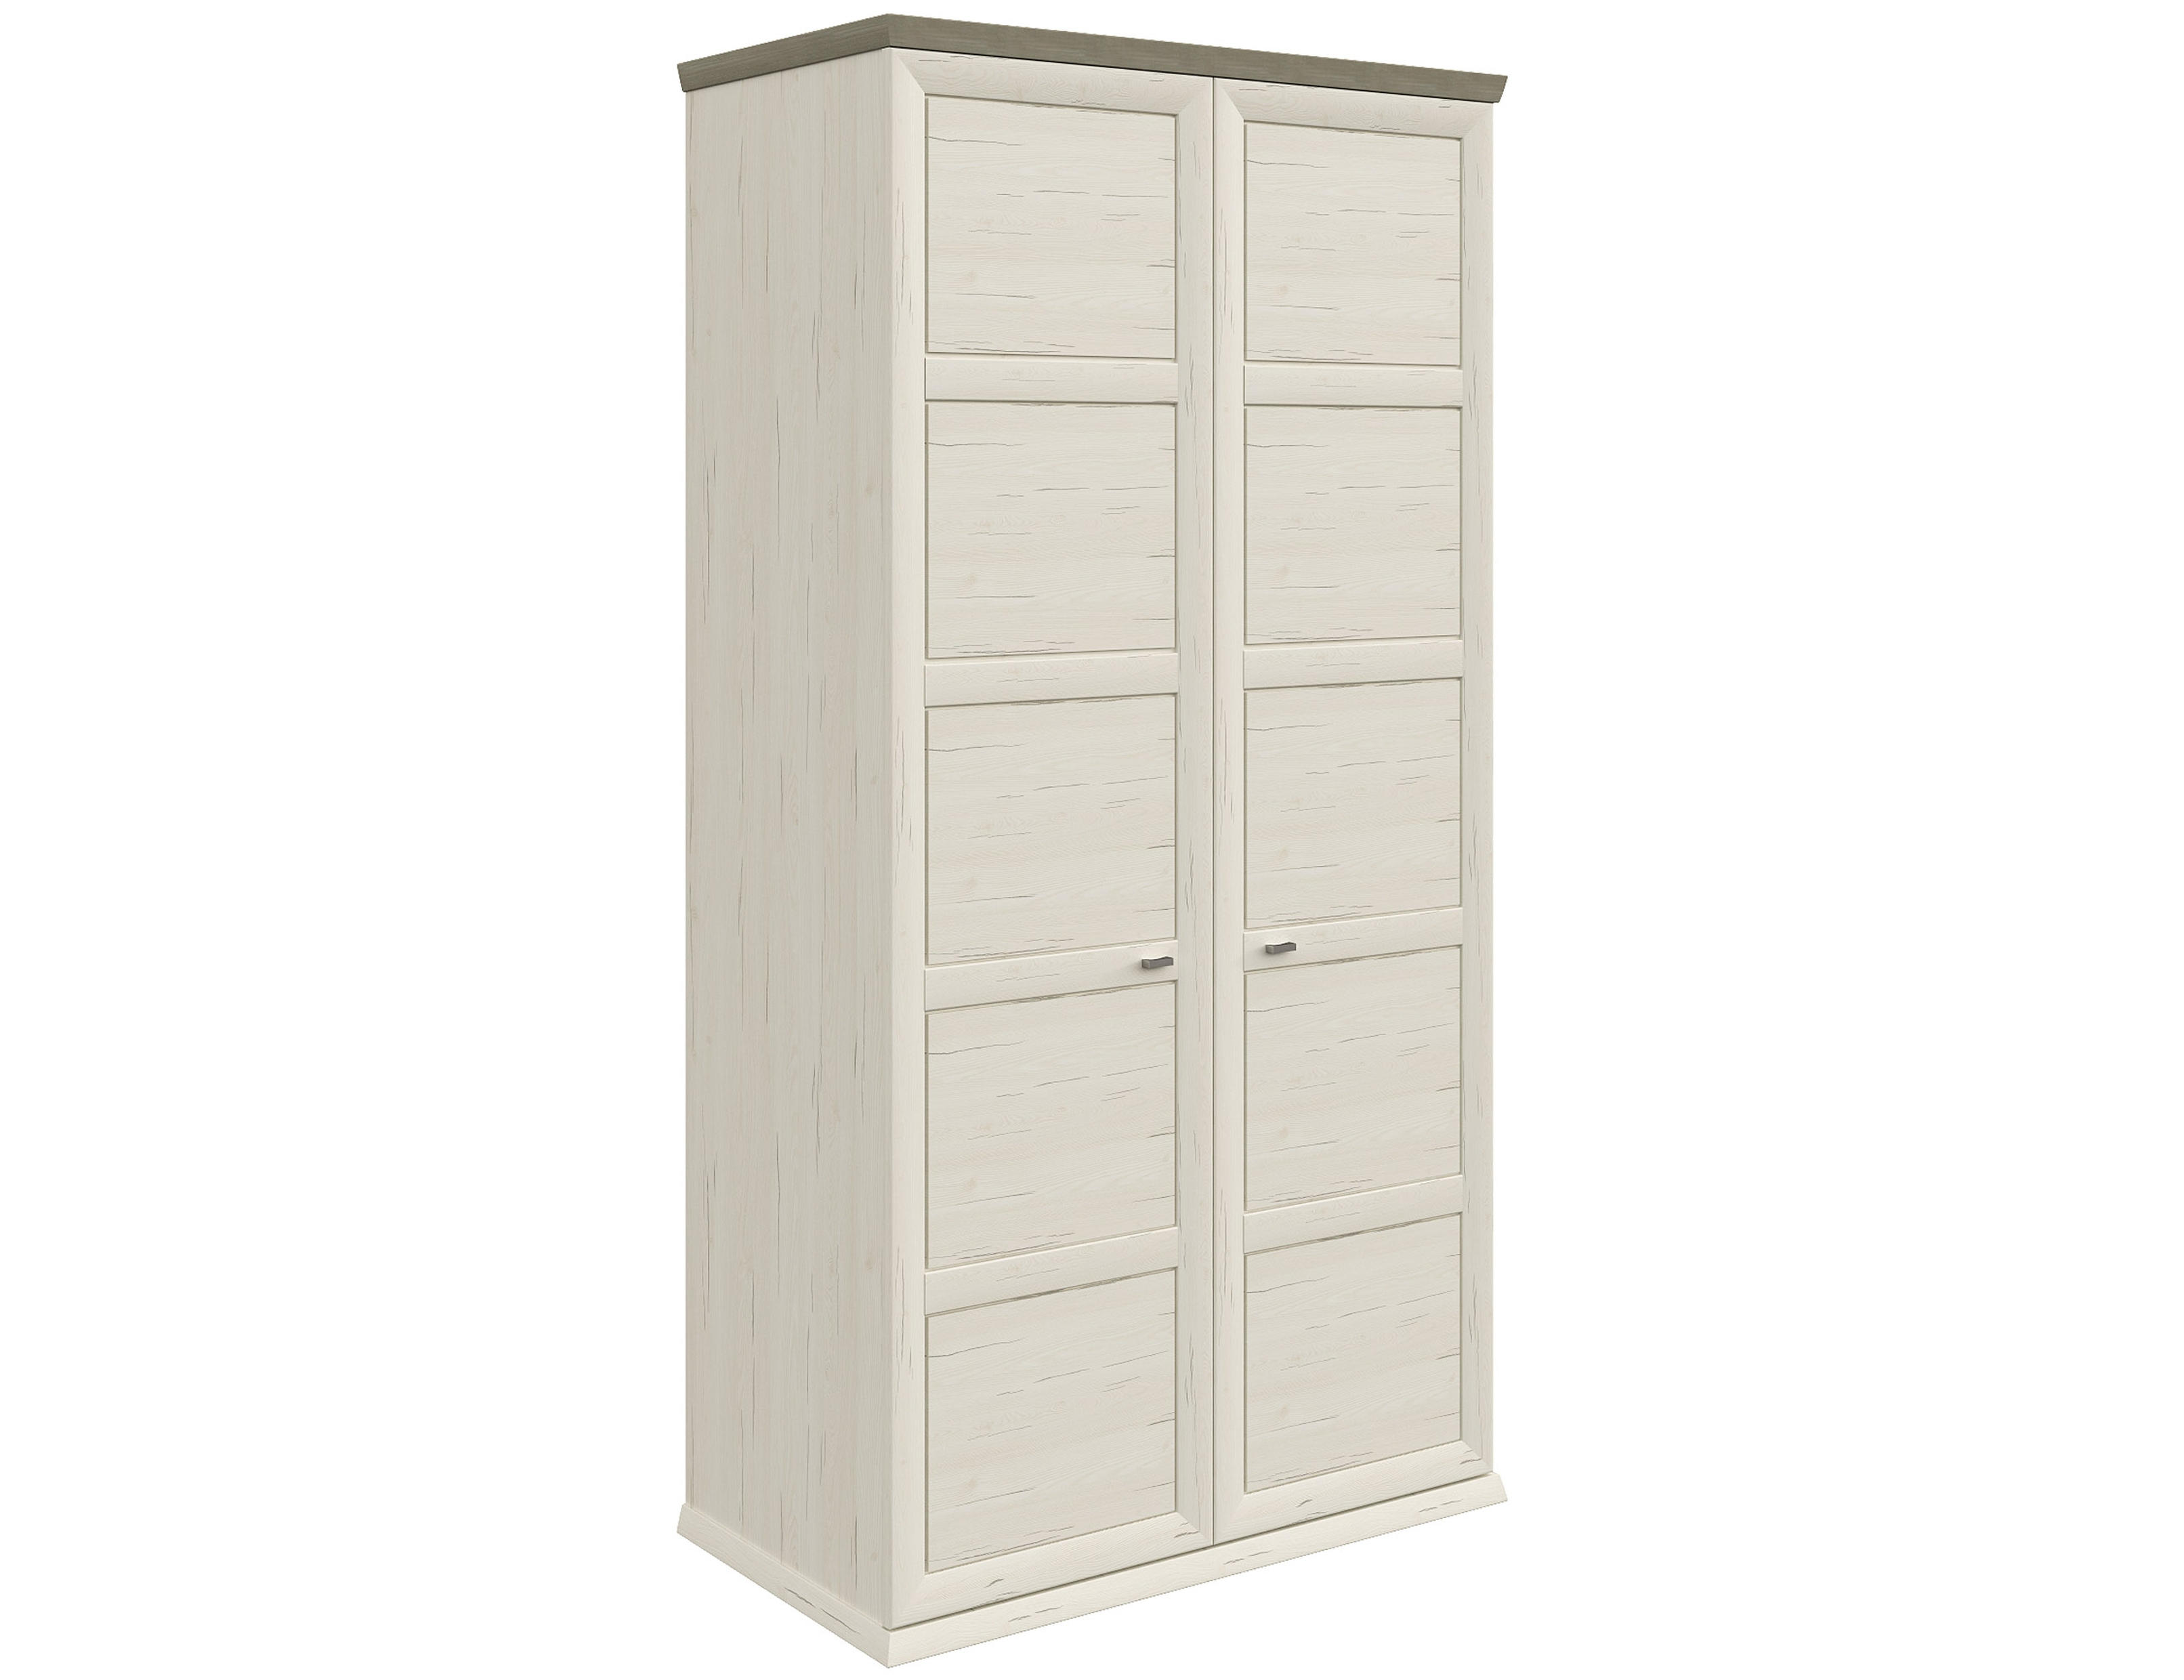 GARDEROB 104/209,5/60 cm 2-dörrar - vit/nickelfärgad, Lifestyle, metall/träbaserade material (104/209,5/60cm) - Hom`in